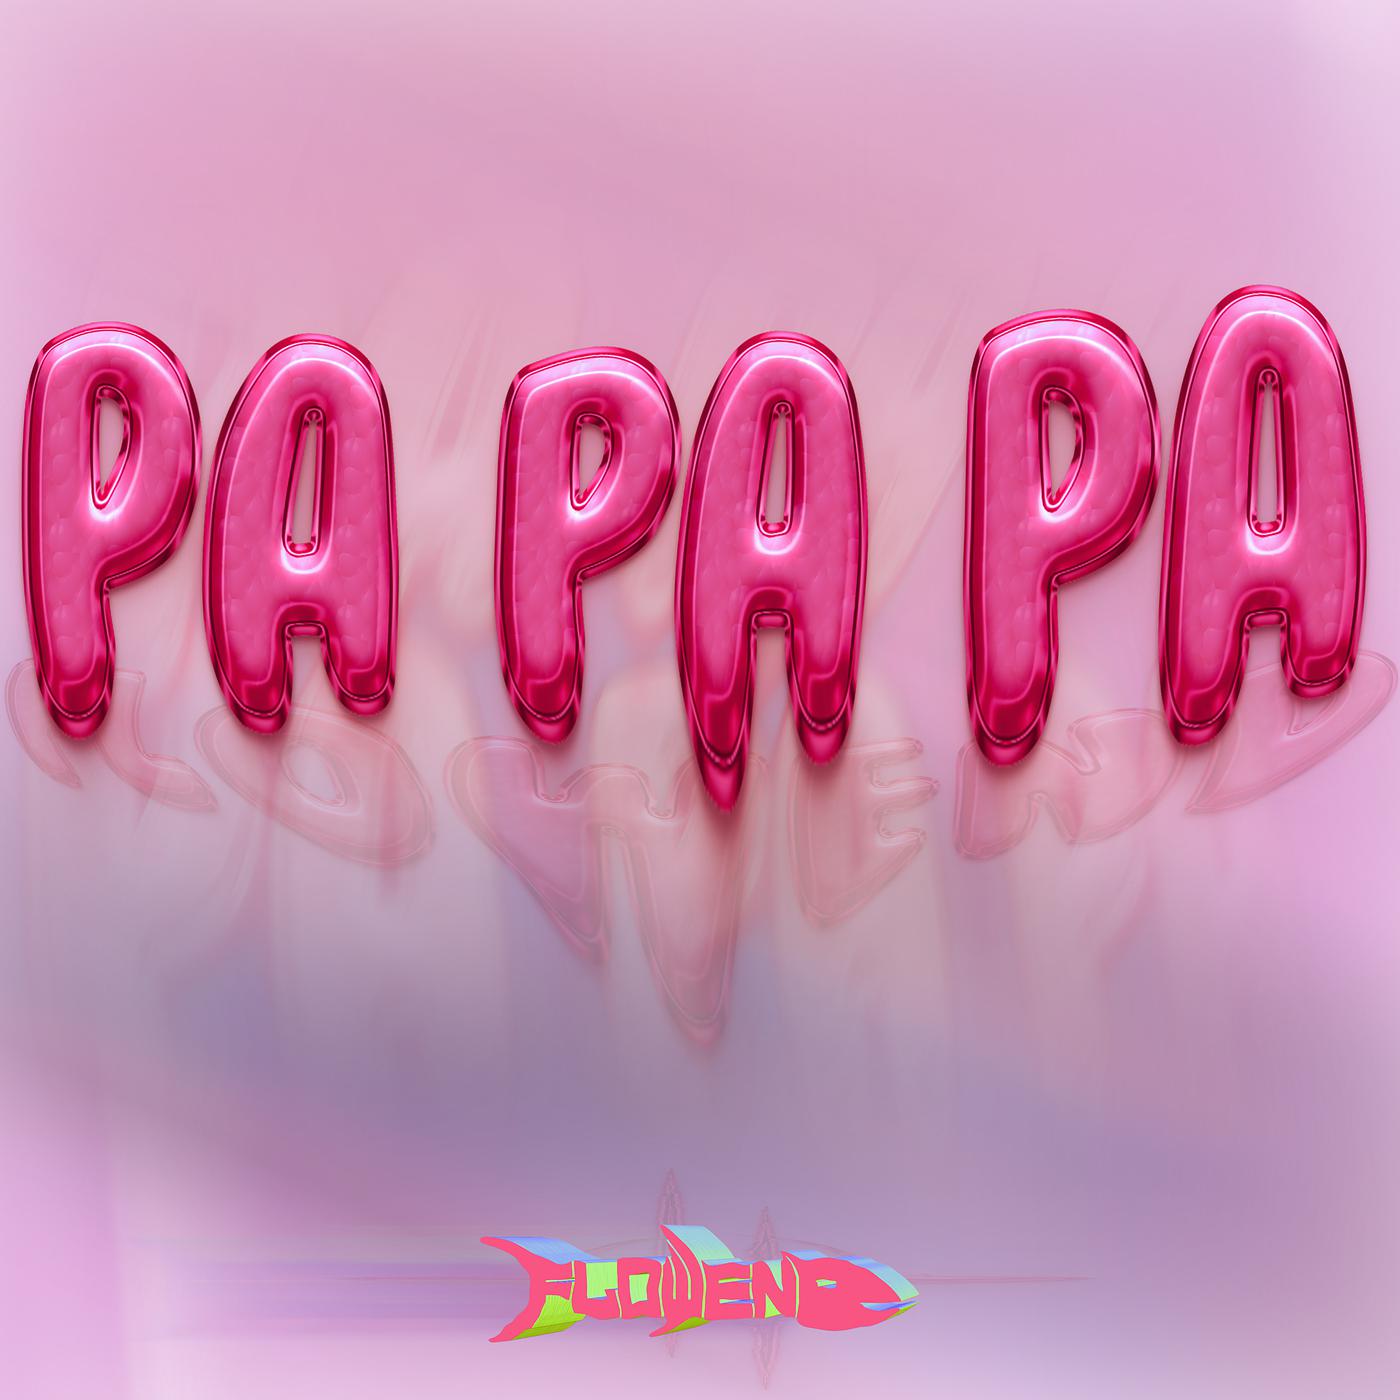 Постер альбома Pa Pa Pa